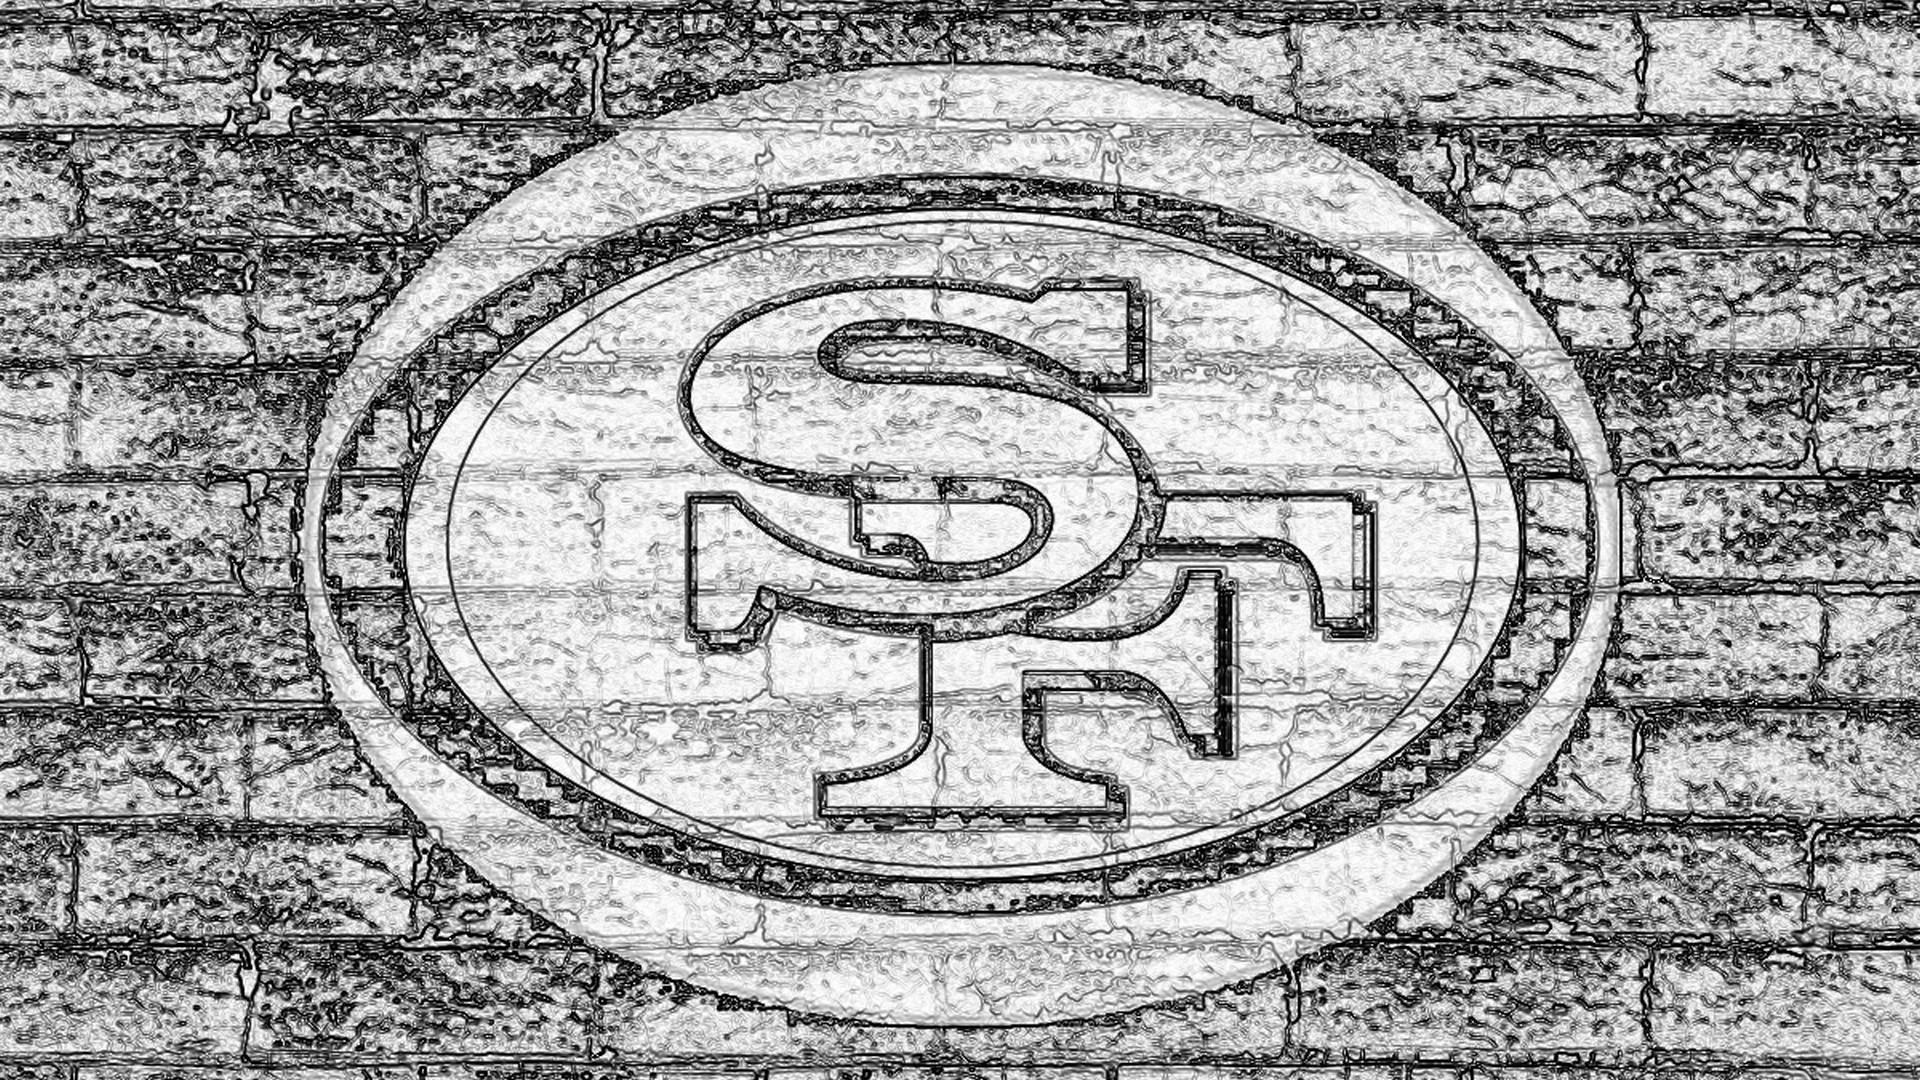 san francisco 49ers, sports, emblem, logo, nfl, football